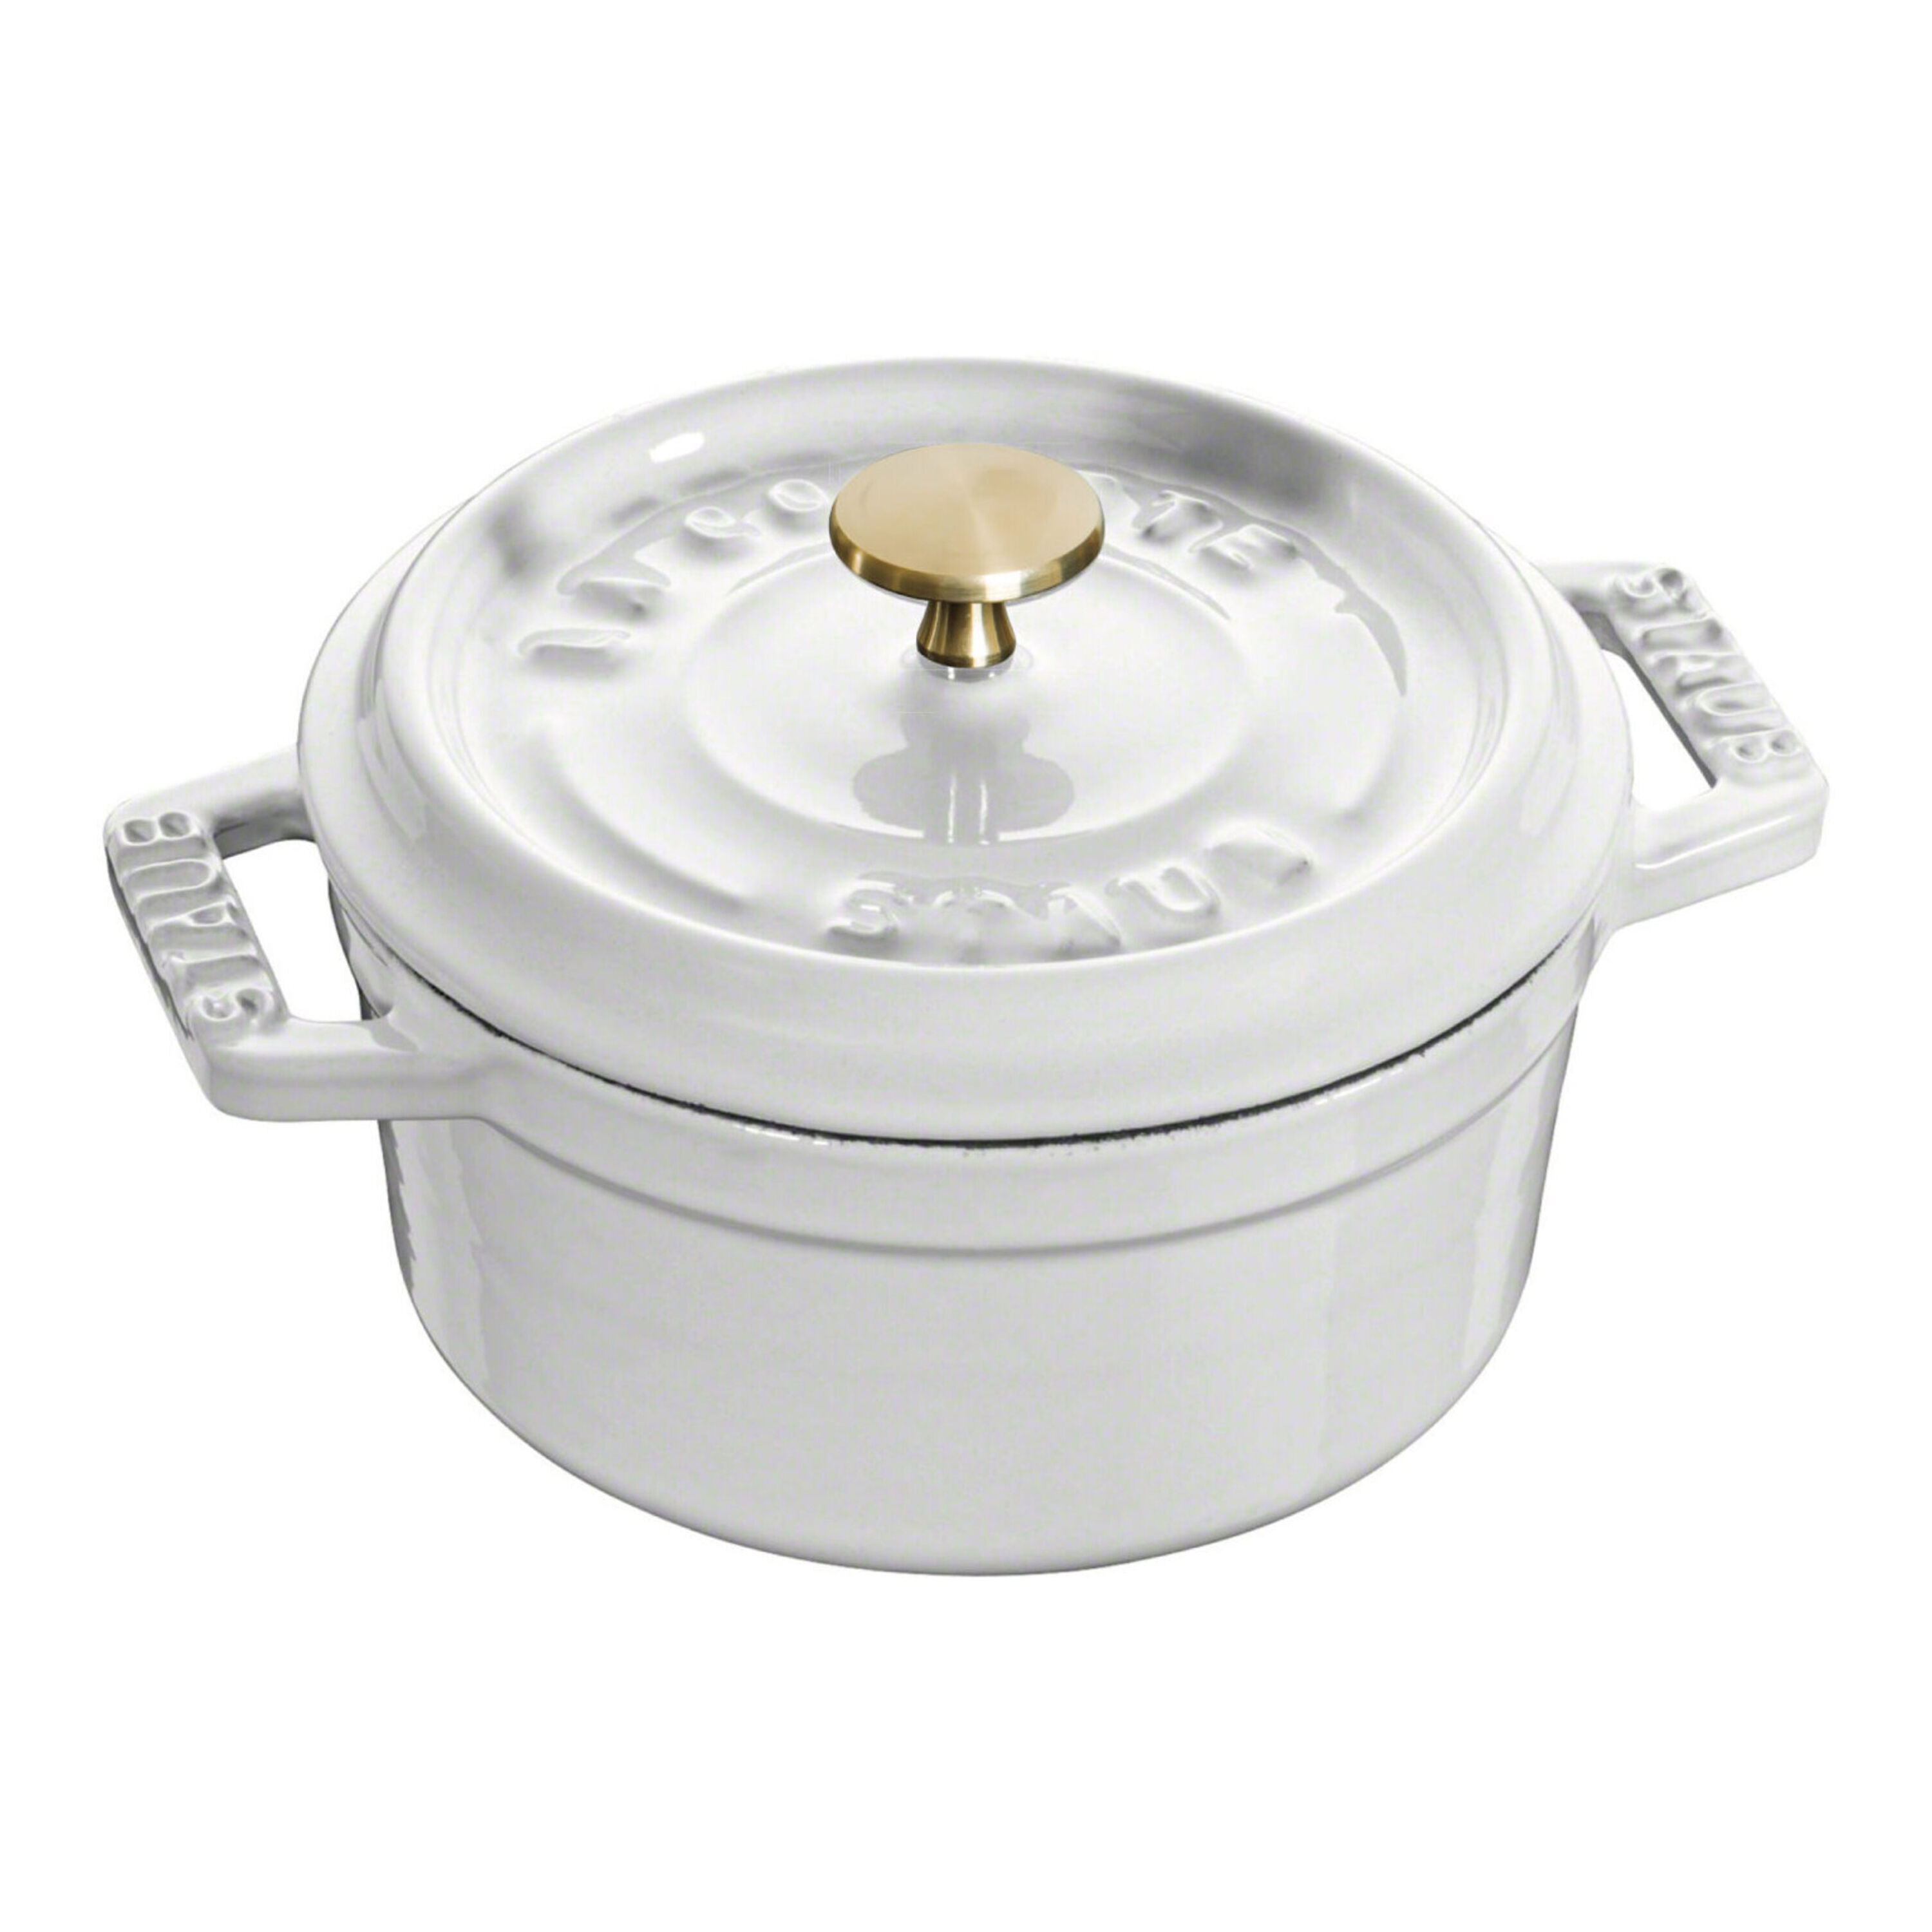 ココット ピュアホワイト| 鋳物ホーロー鍋| ストウブ(STAUB)公式通販